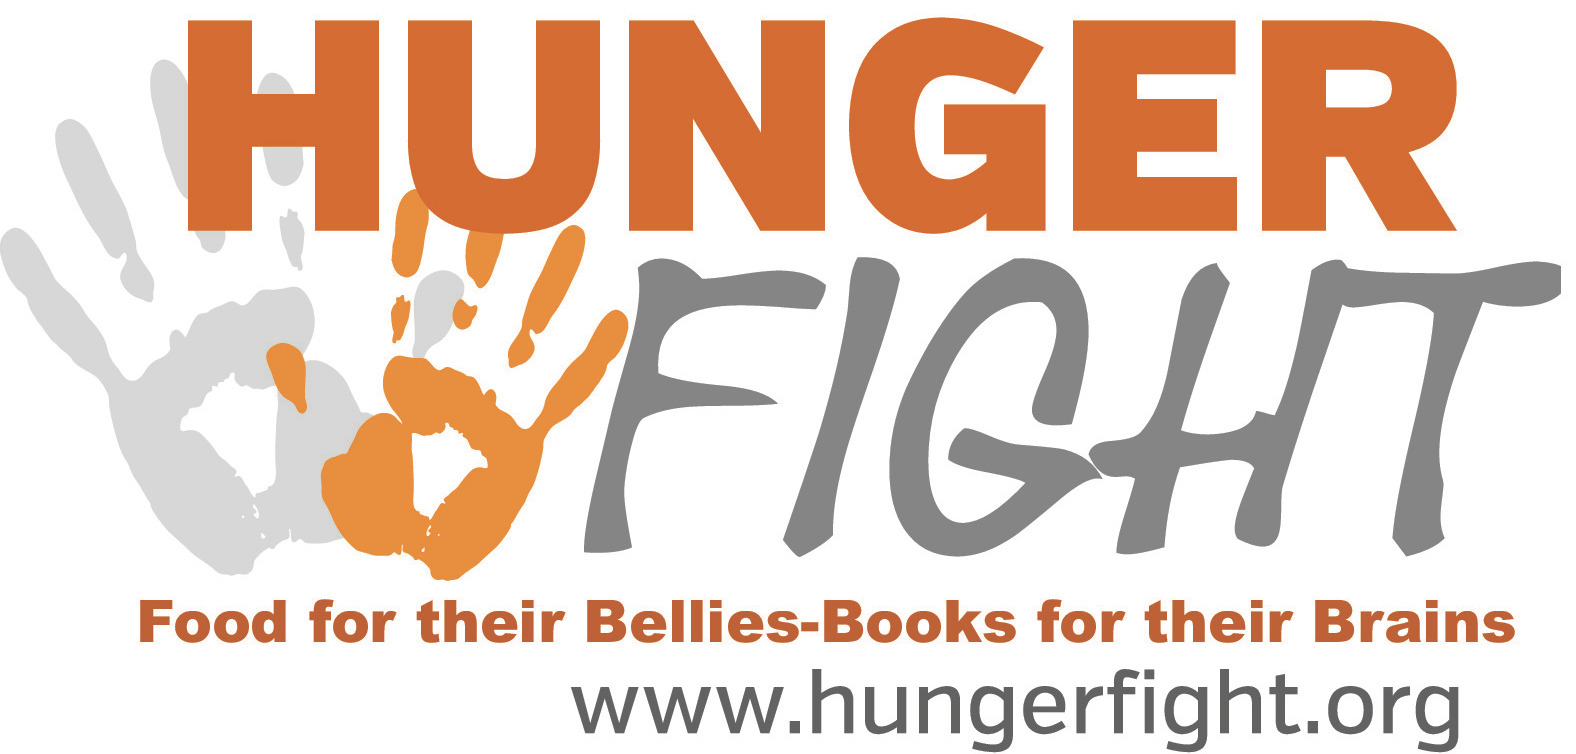 Hunger Fight logo